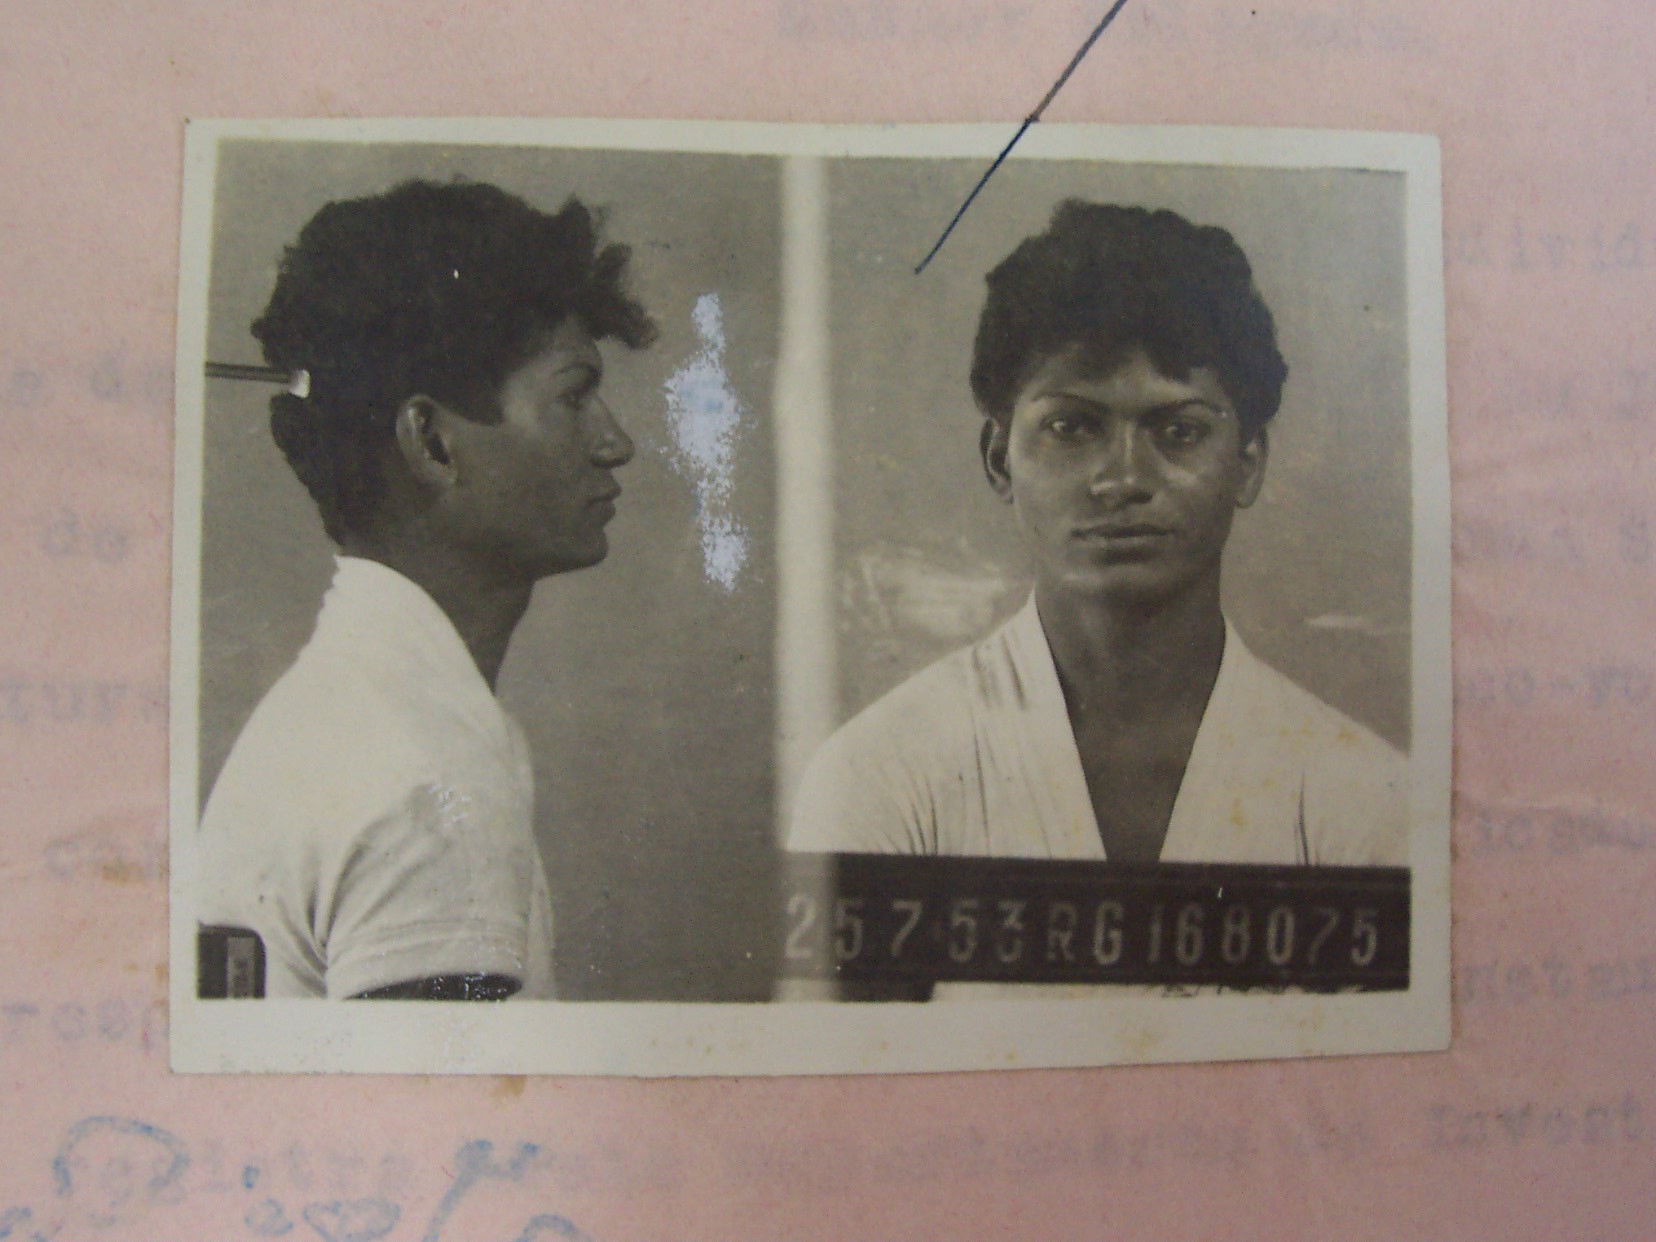 Imagem da primeira identificação criminal de Cintura Fina, reproduzida dos autos judiciais, registrada em 25 de julho de 1953